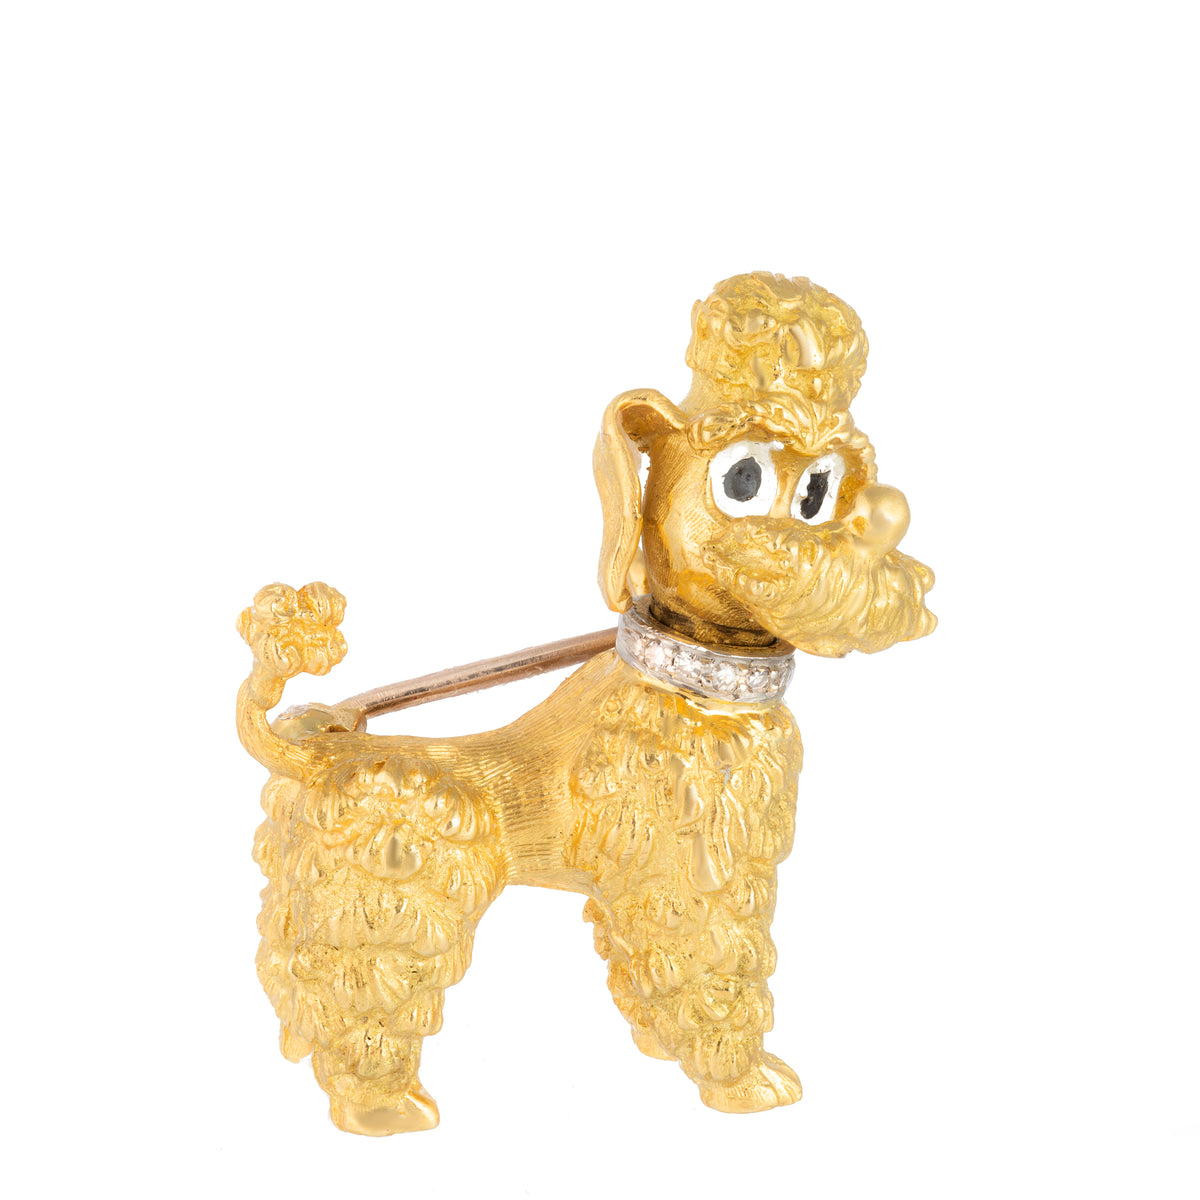 An Eighteen Carat Gold Poodle brooch by Ben Rosenfeld